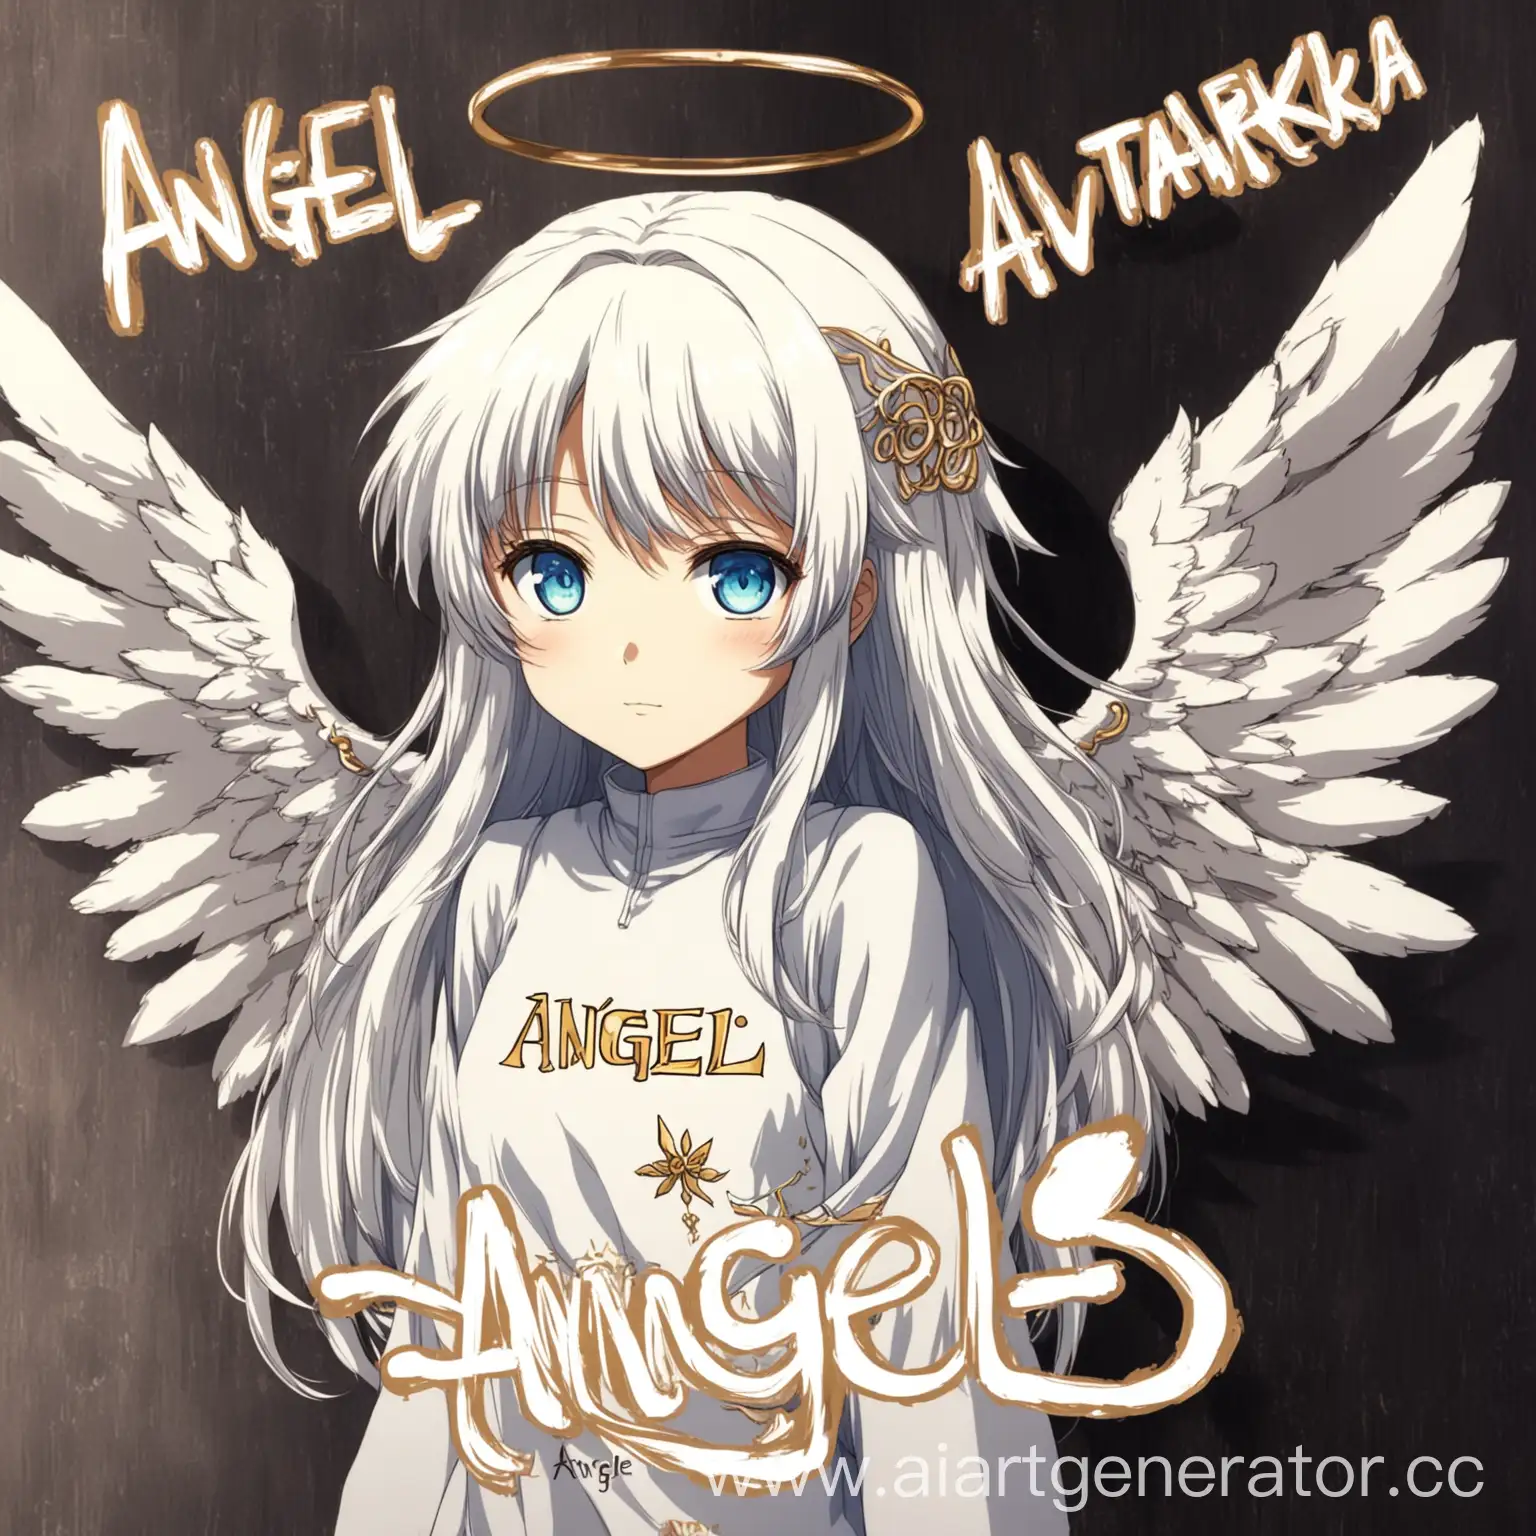 аниме аватарка с надписью ангелок
